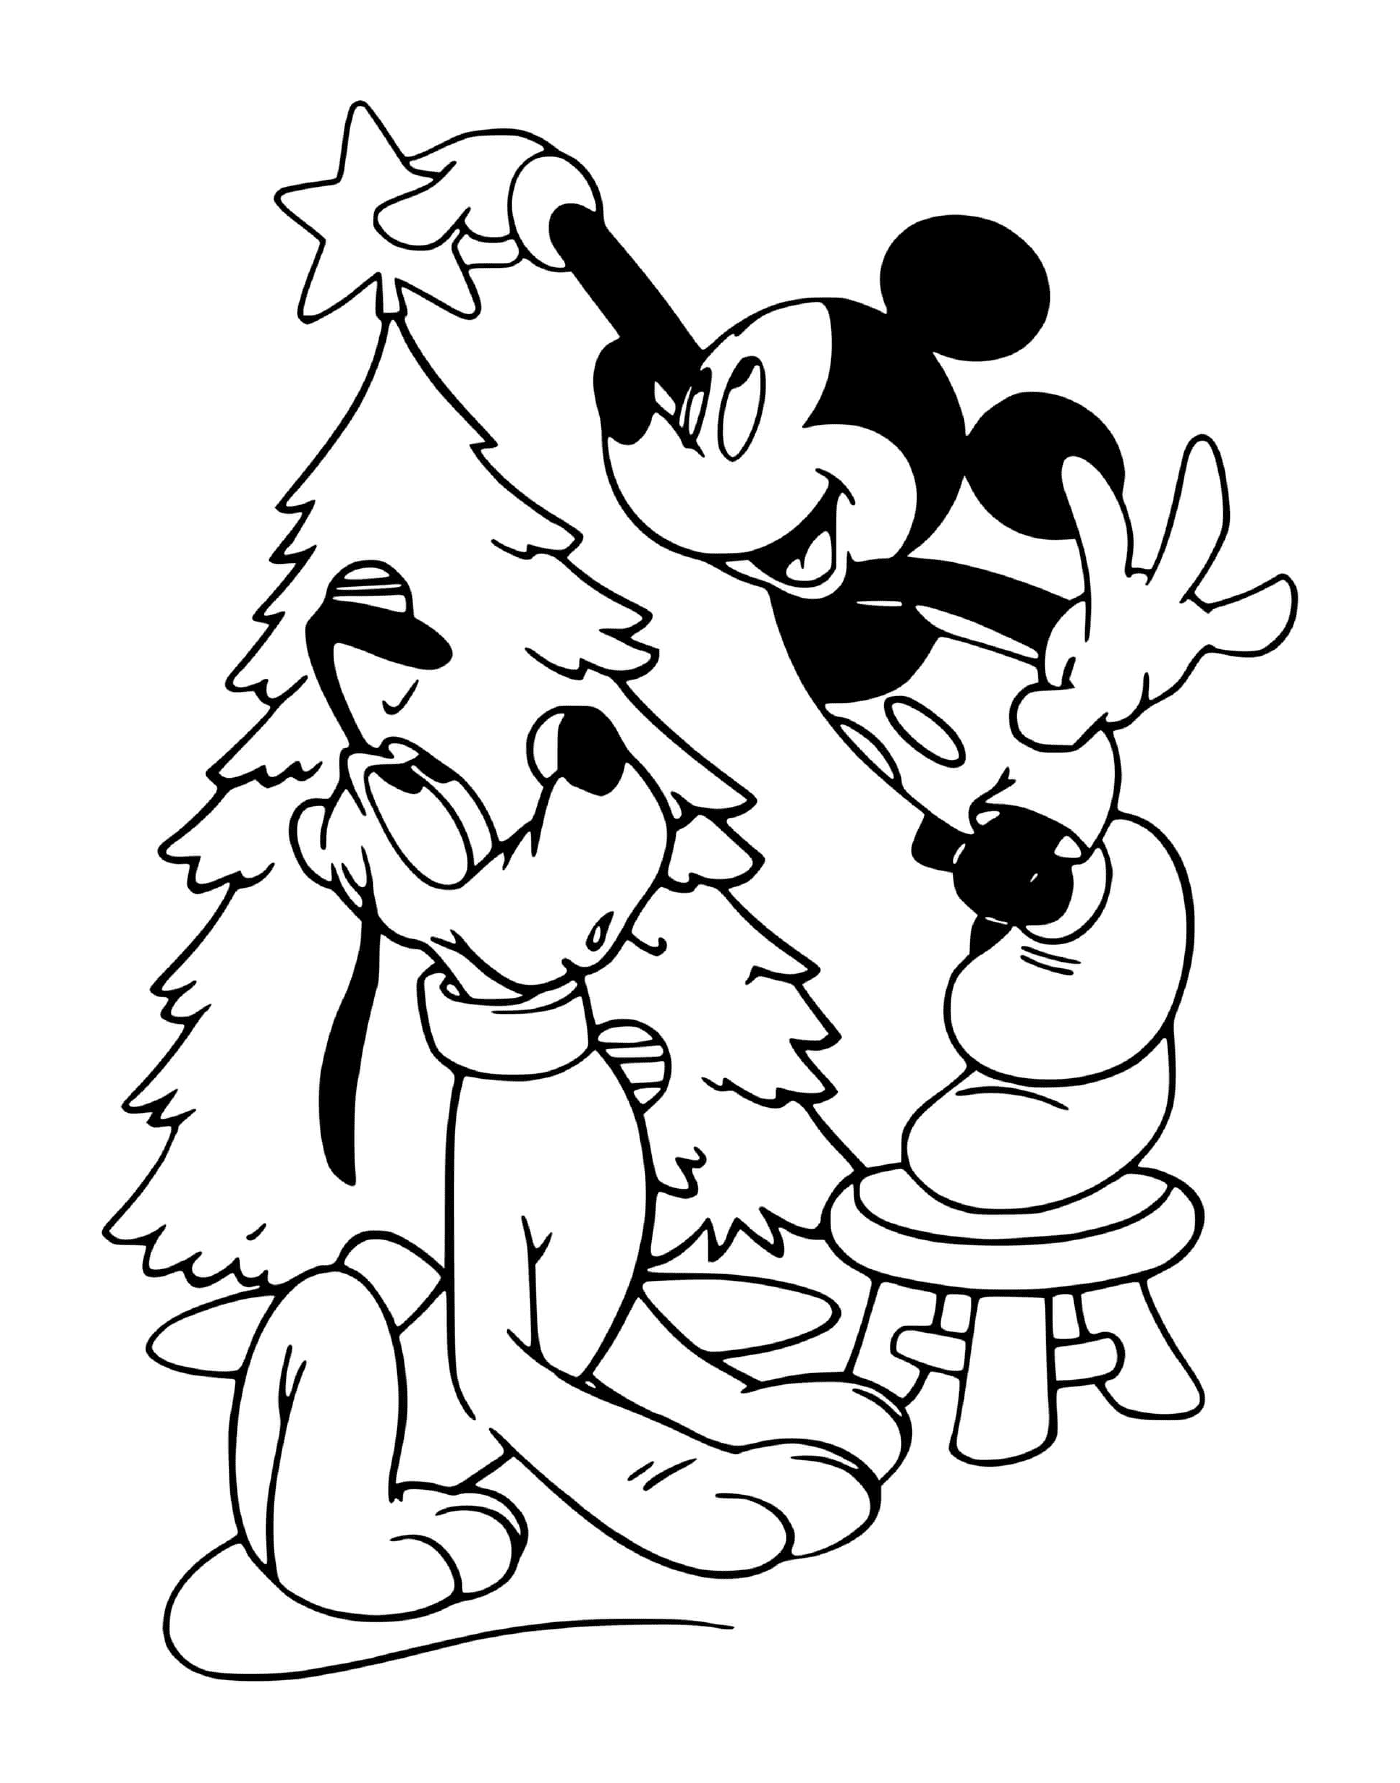  Mickey e Plutone decorano l'albero 